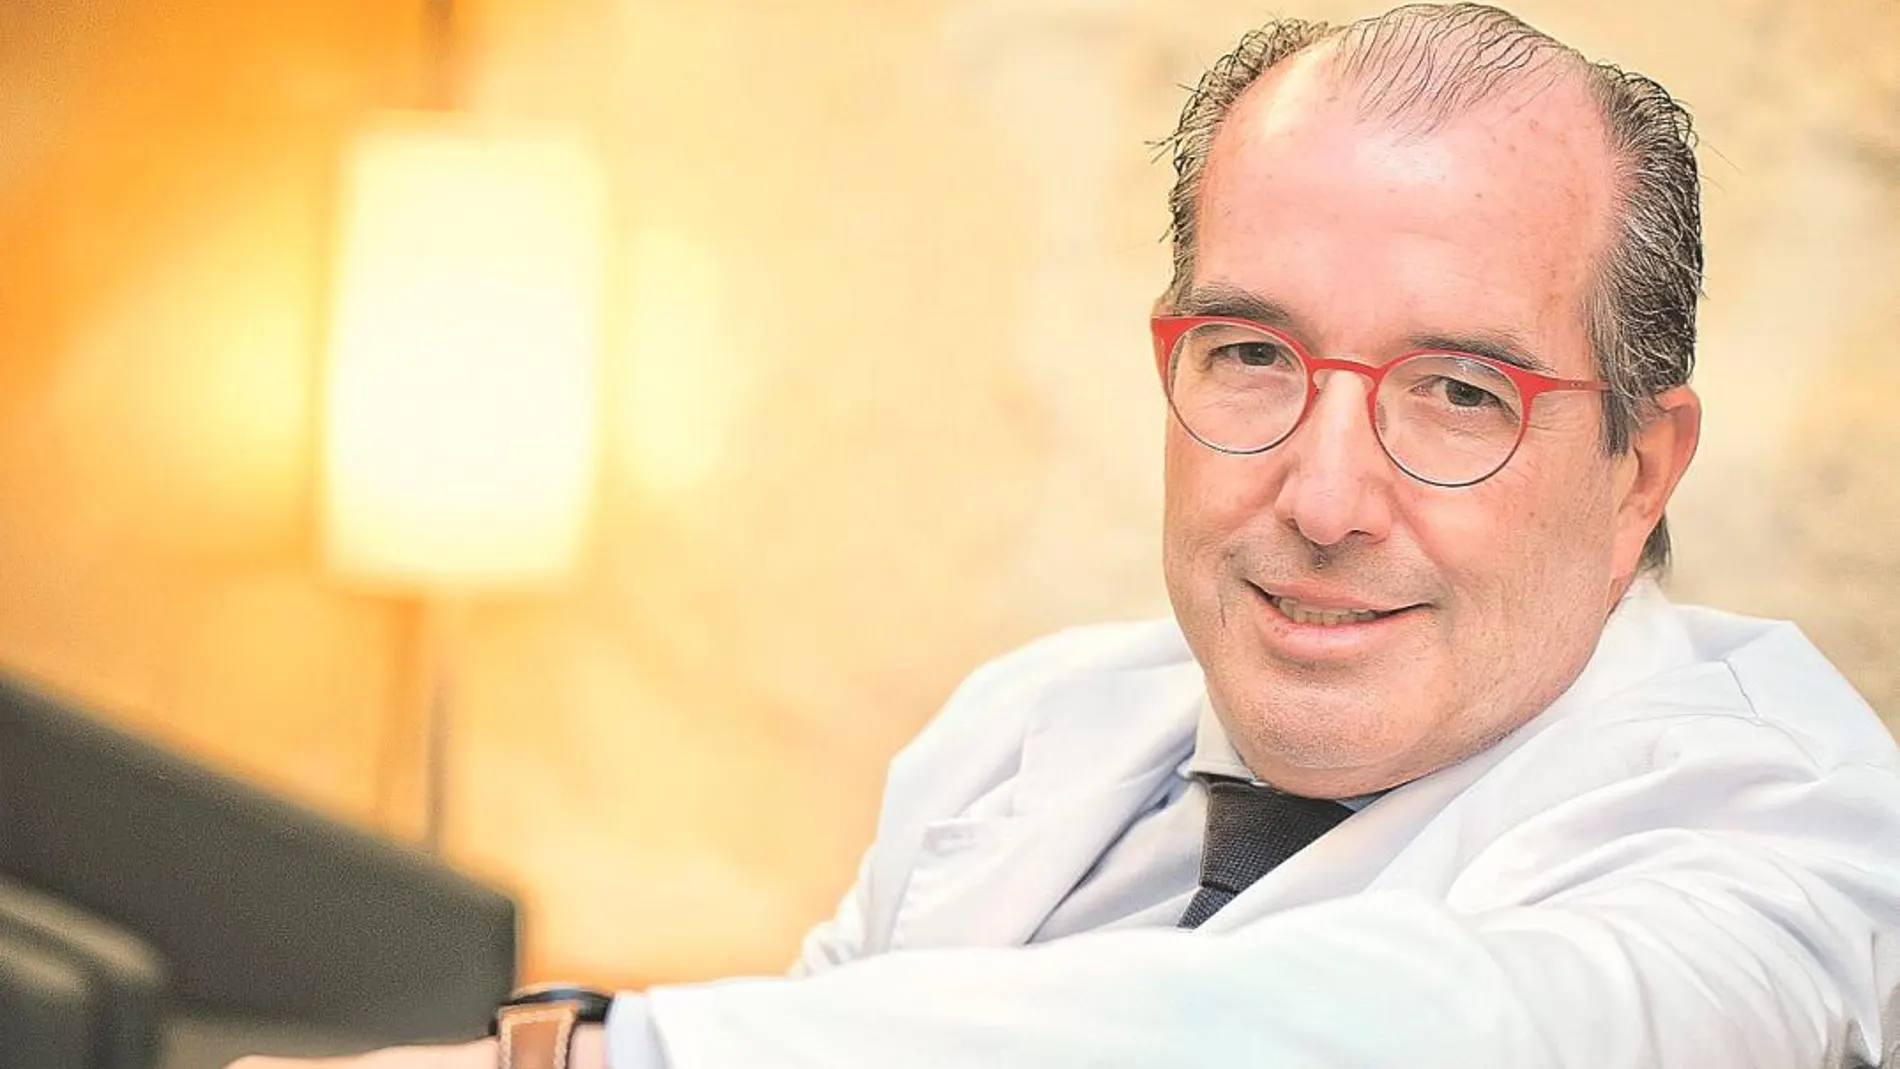 Dr. Javier González Lagunas, Jefe del Servicio de Cirugía Oral, Maxilofacial y Odontología del Hospital Quirónsalud Barcelona